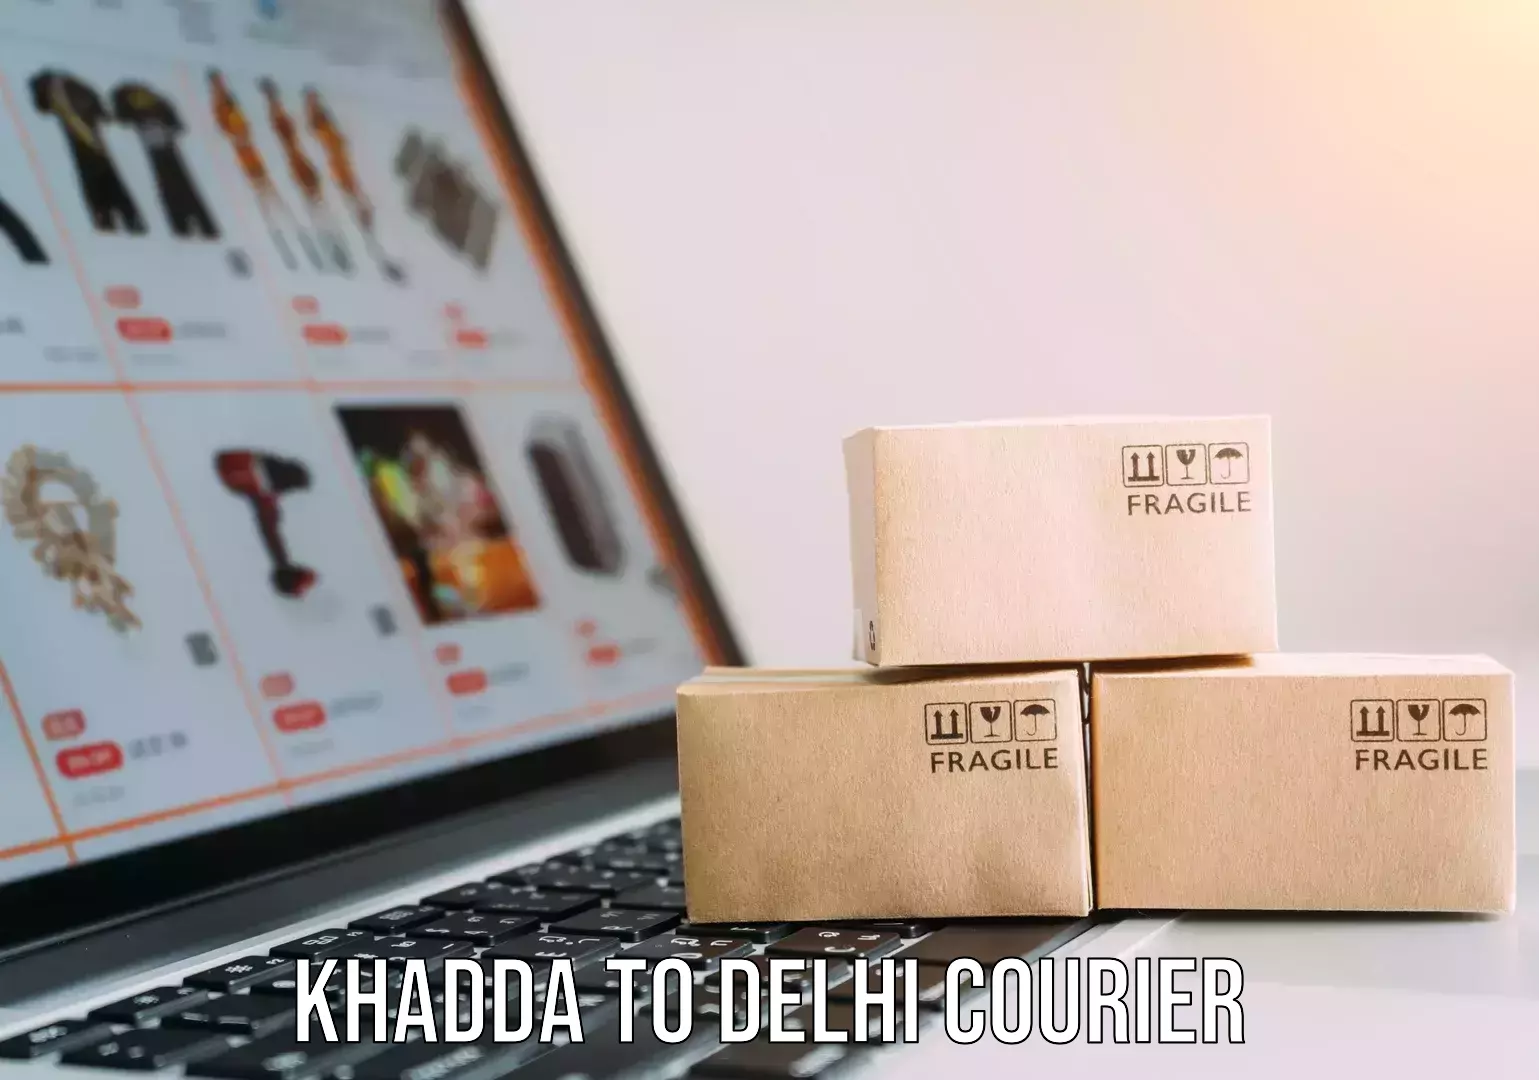 Home relocation experts Khadda to Delhi